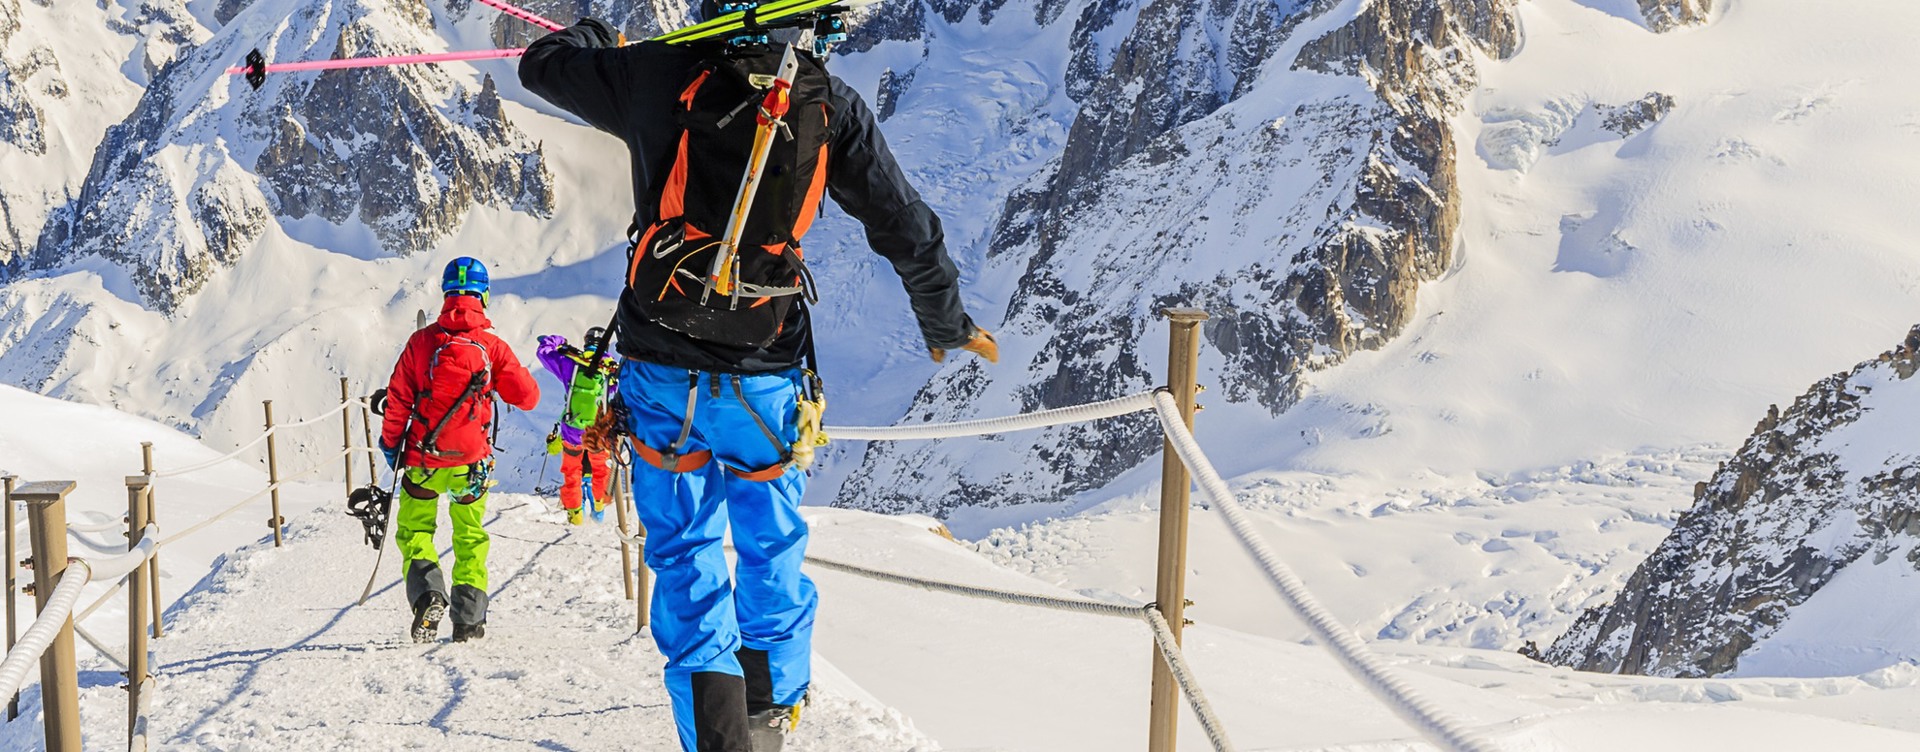 Lees waarom je een skivakantie in Flaine
absoluut niet wil missen